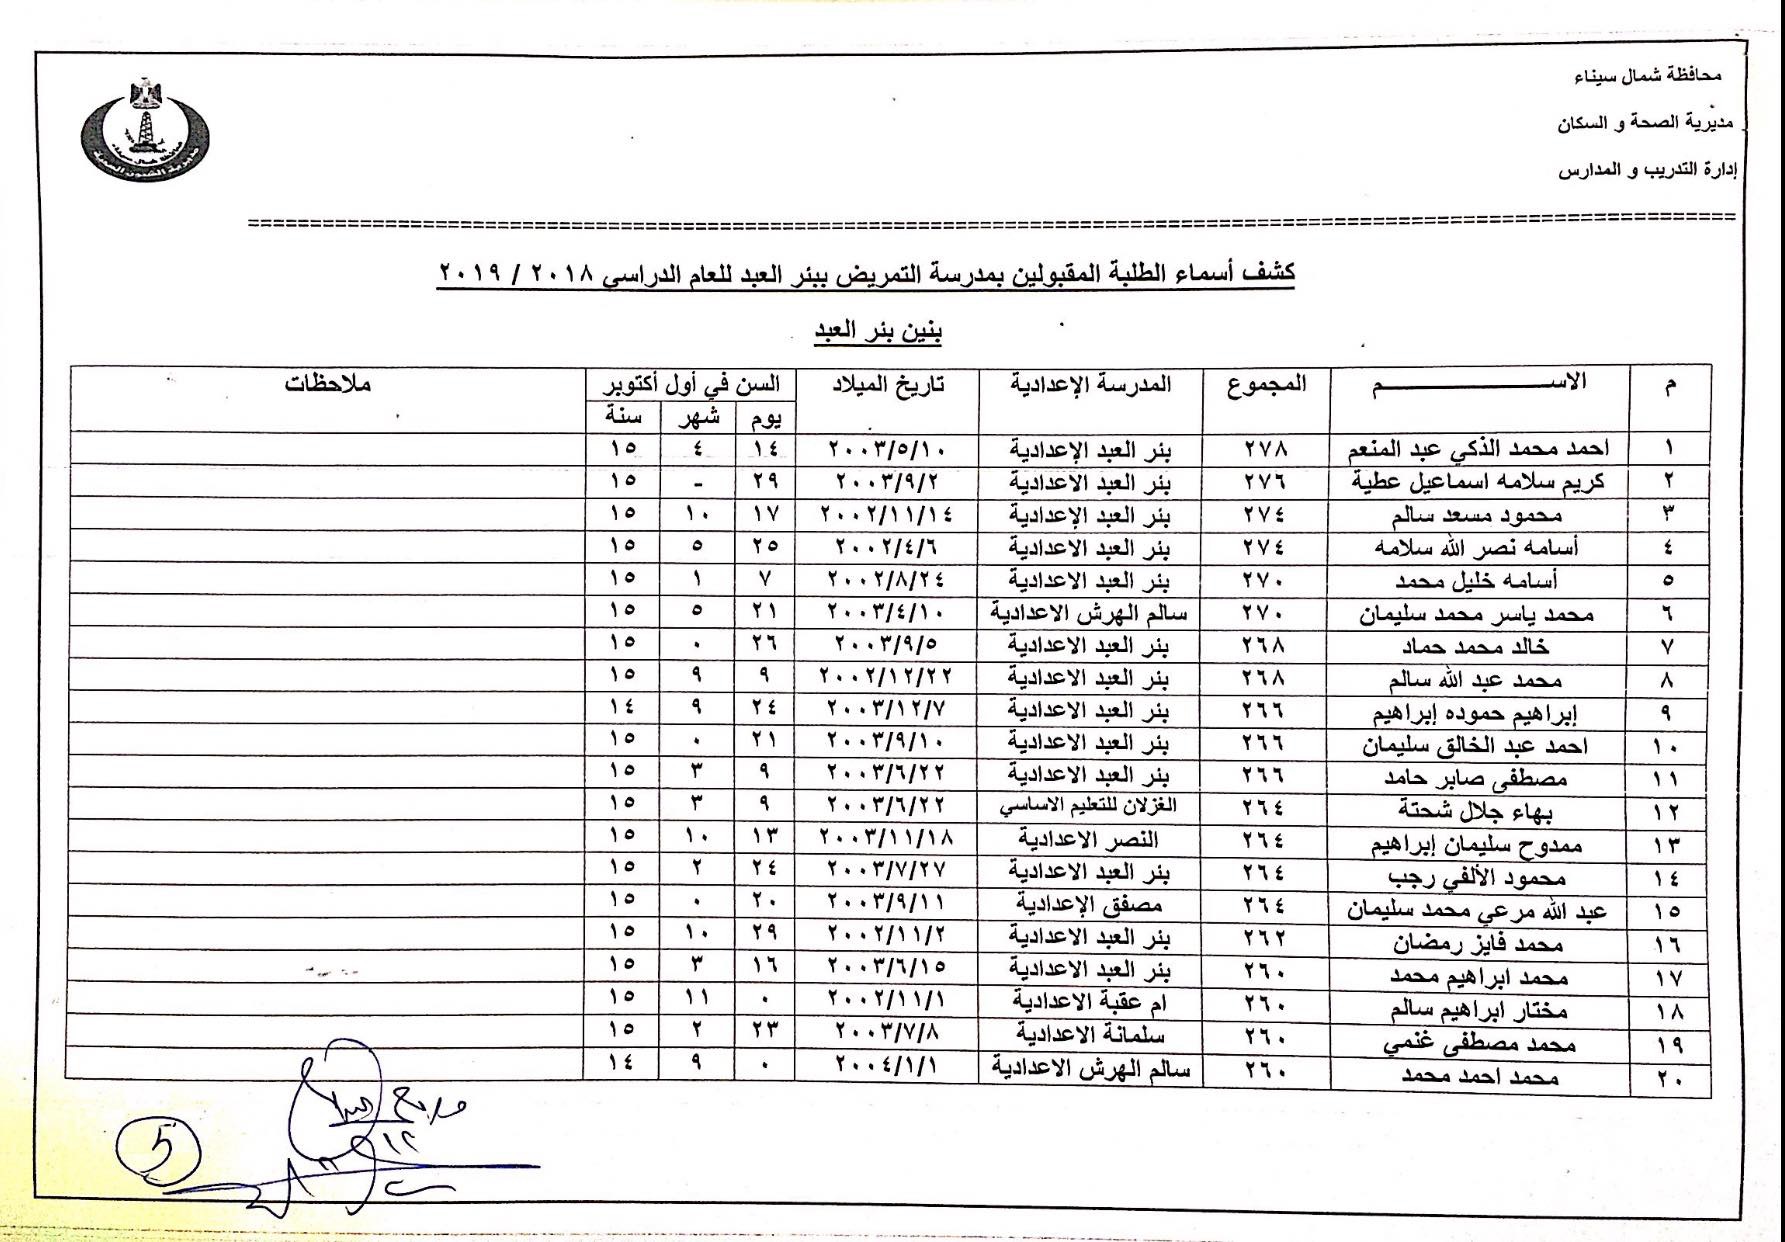 أسماء المقبولين بمدارس التمريض بشمال سيناء (5)